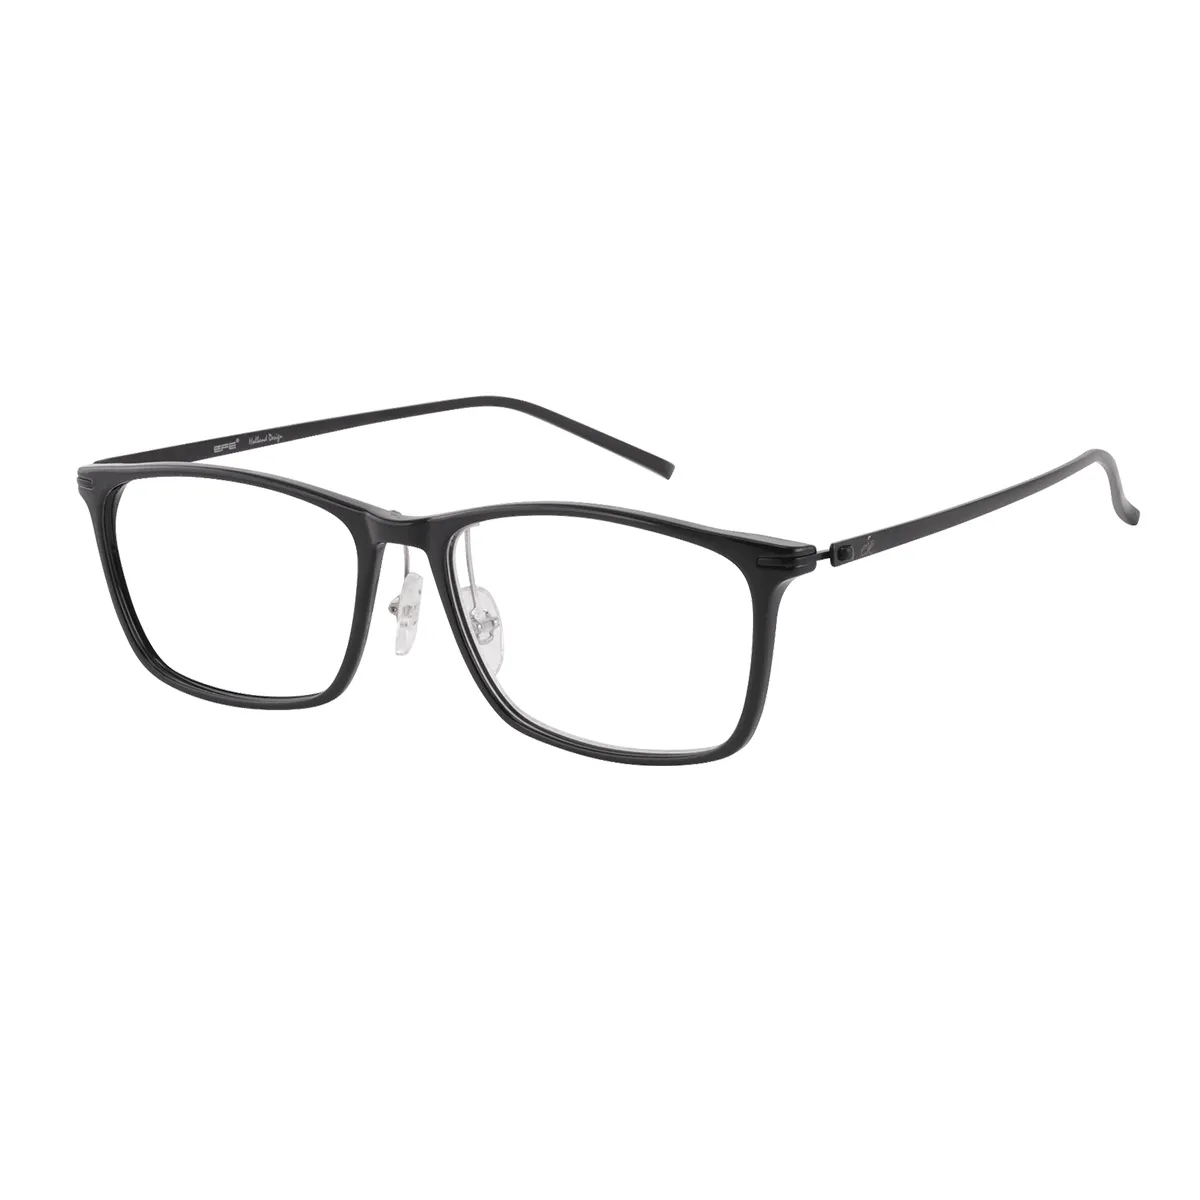 Carmel - Rectangle Black Glasses for Men & Women - EFE